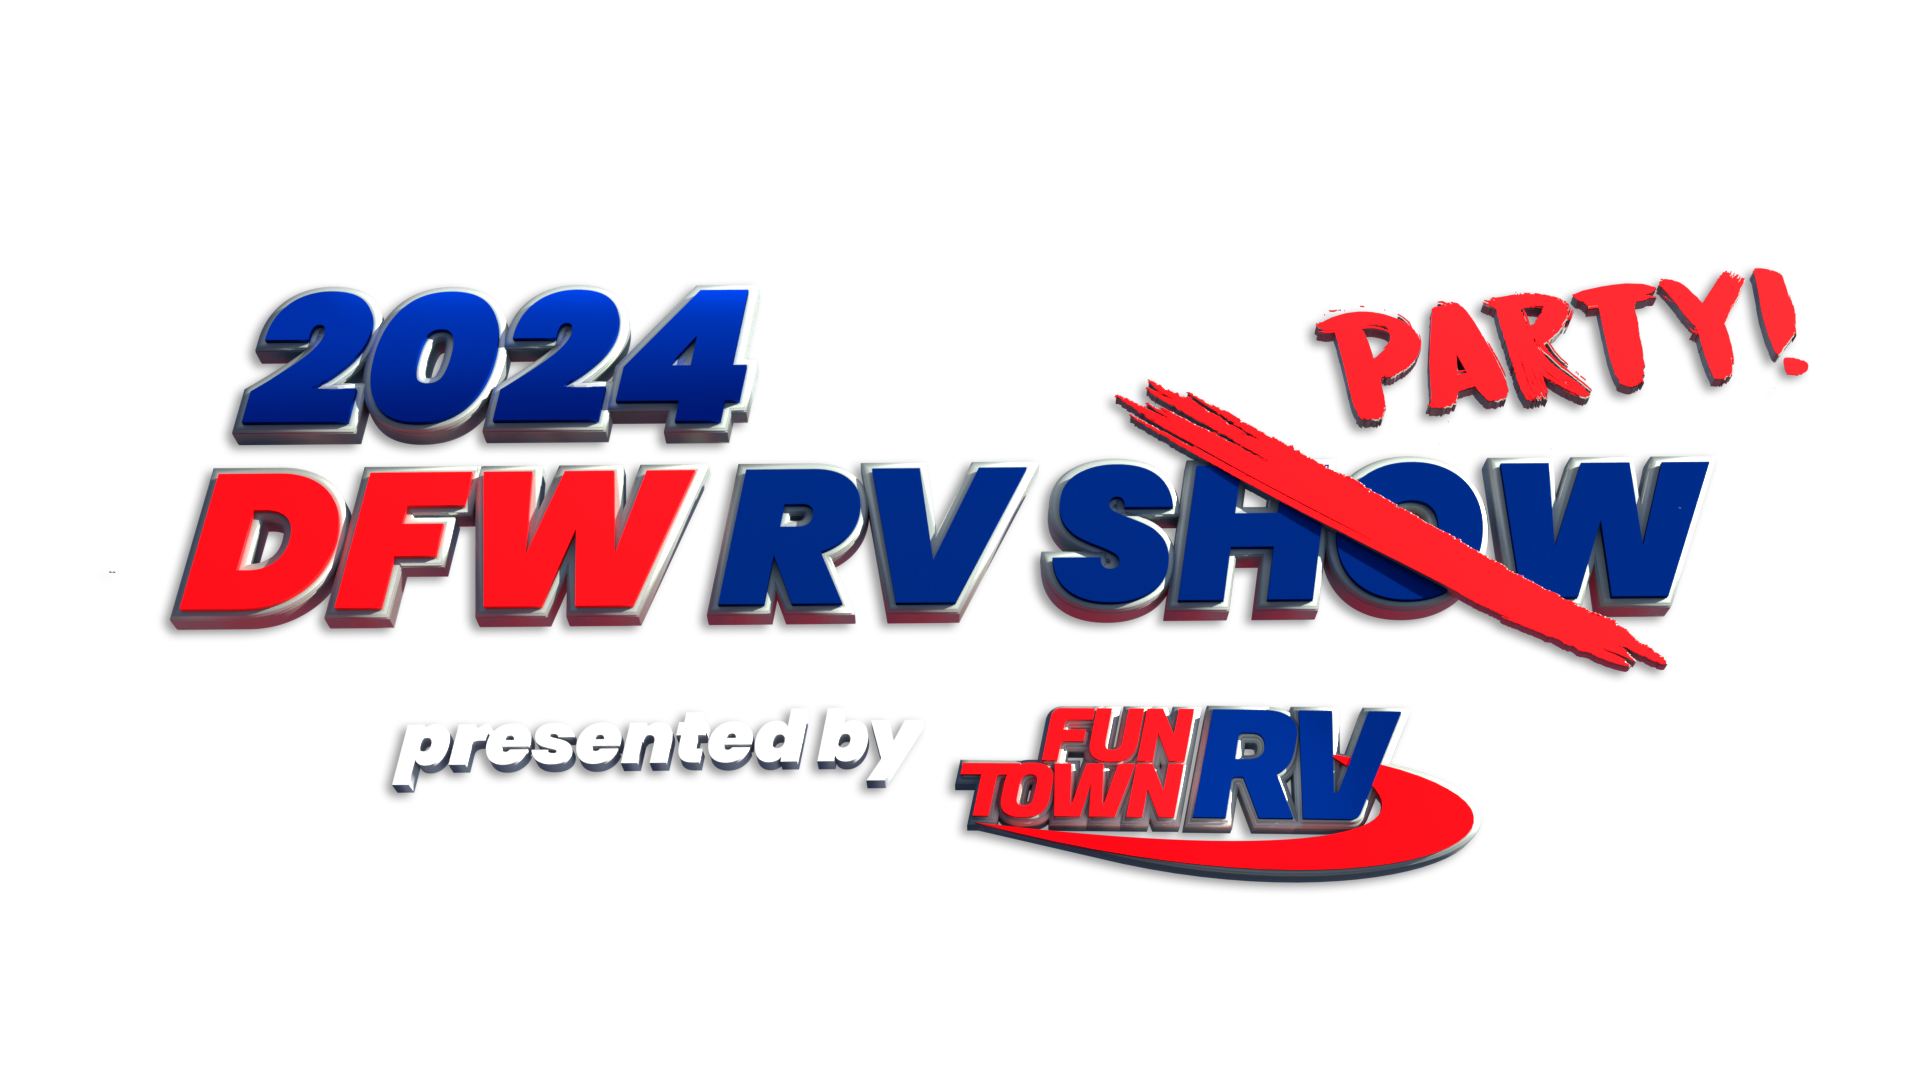 2024 dfw rv party logo6